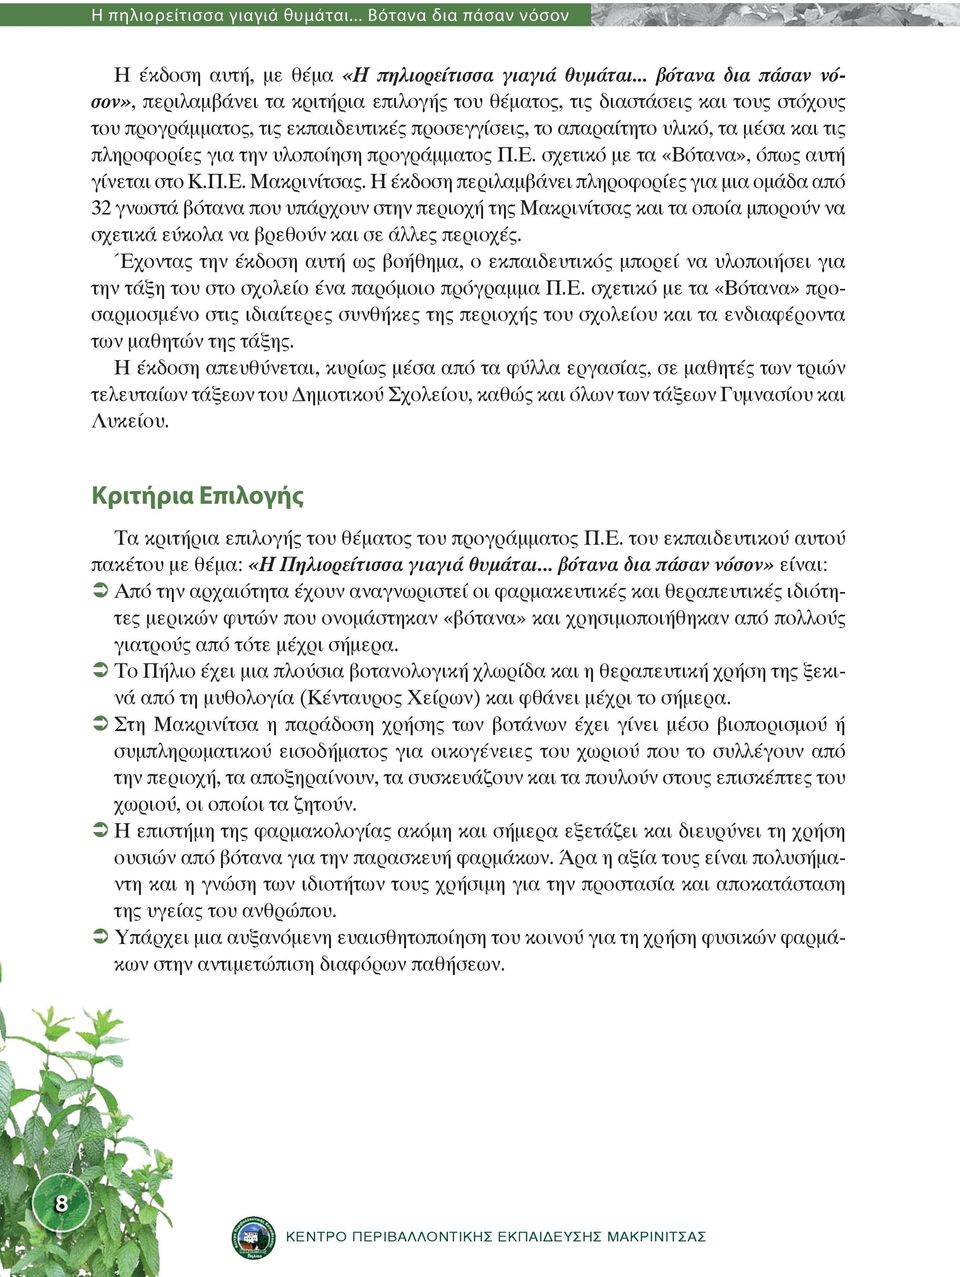 πληροφορίες για την υλοποίηση προγράμματος Π.Ε. σχετικό με τα «Βότανα», όπως αυτή γίνεται στο Κ.Π.Ε. Μακρινίτσας.